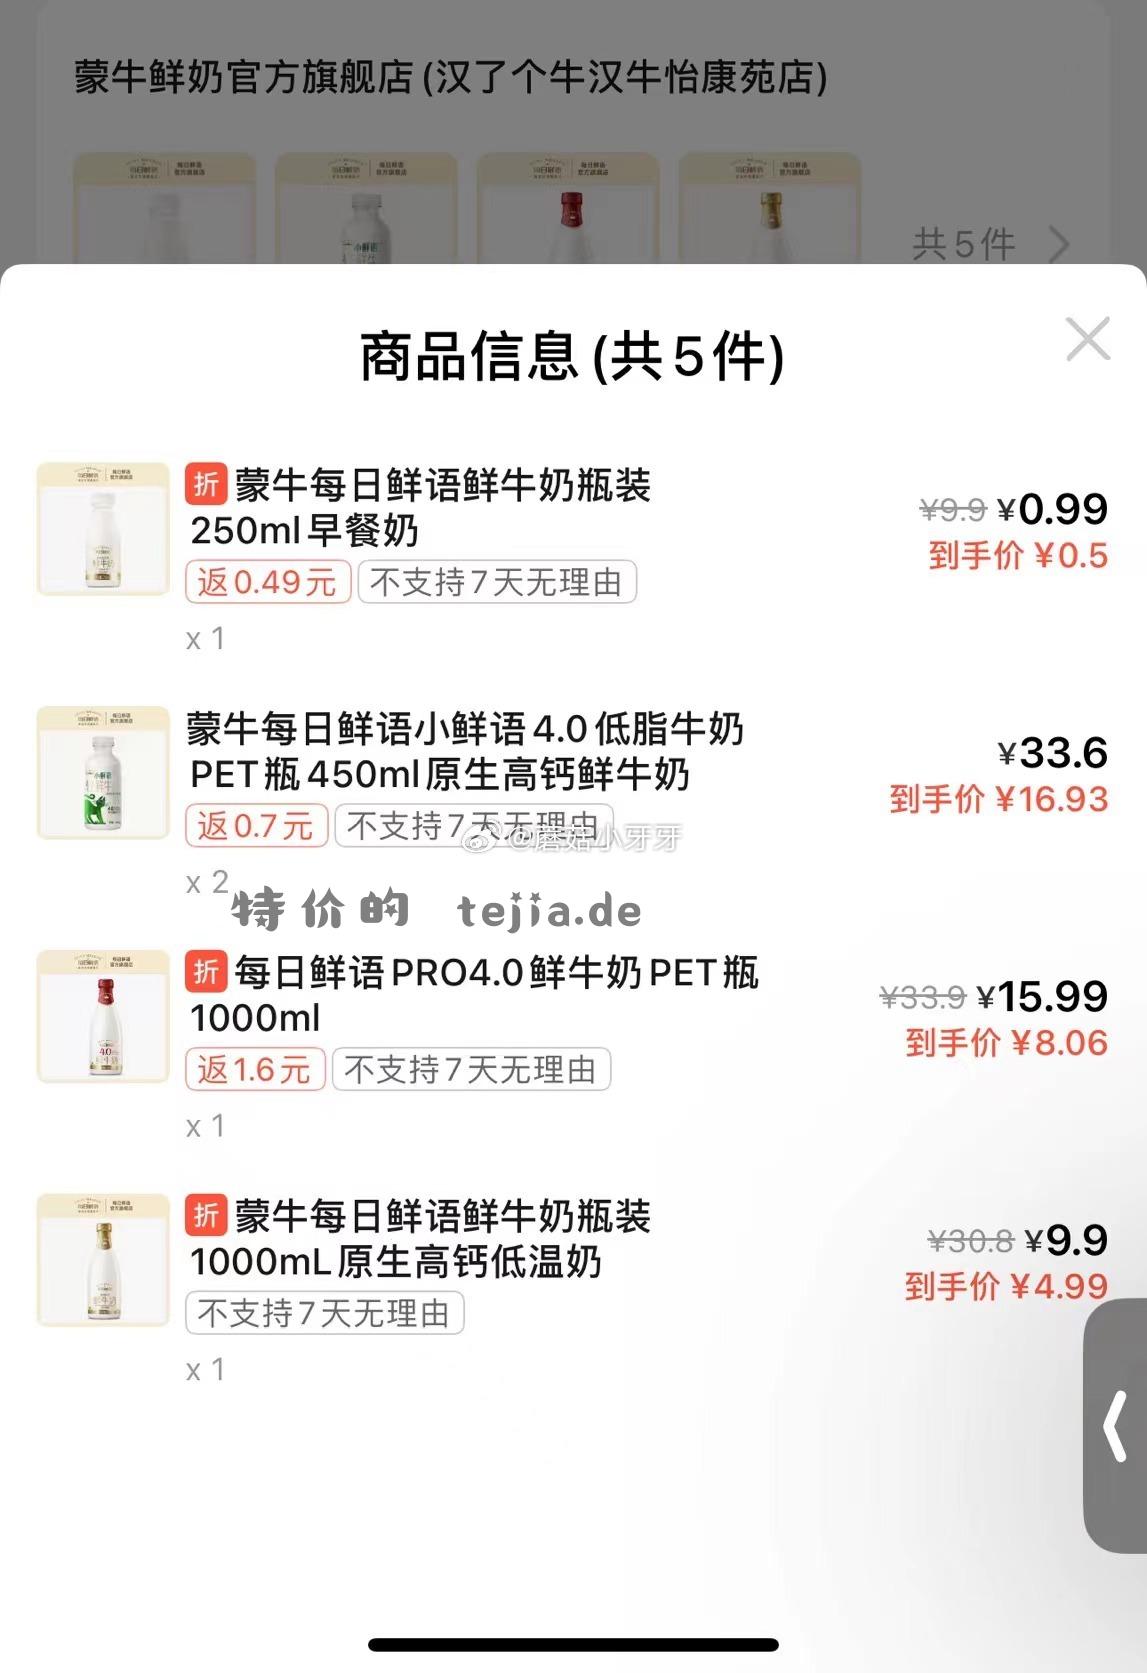 饿了么 反馈 坐标武汉 app搜“每日鲜语” 59-25满减 叠加部分商品首件特价 - 特价的